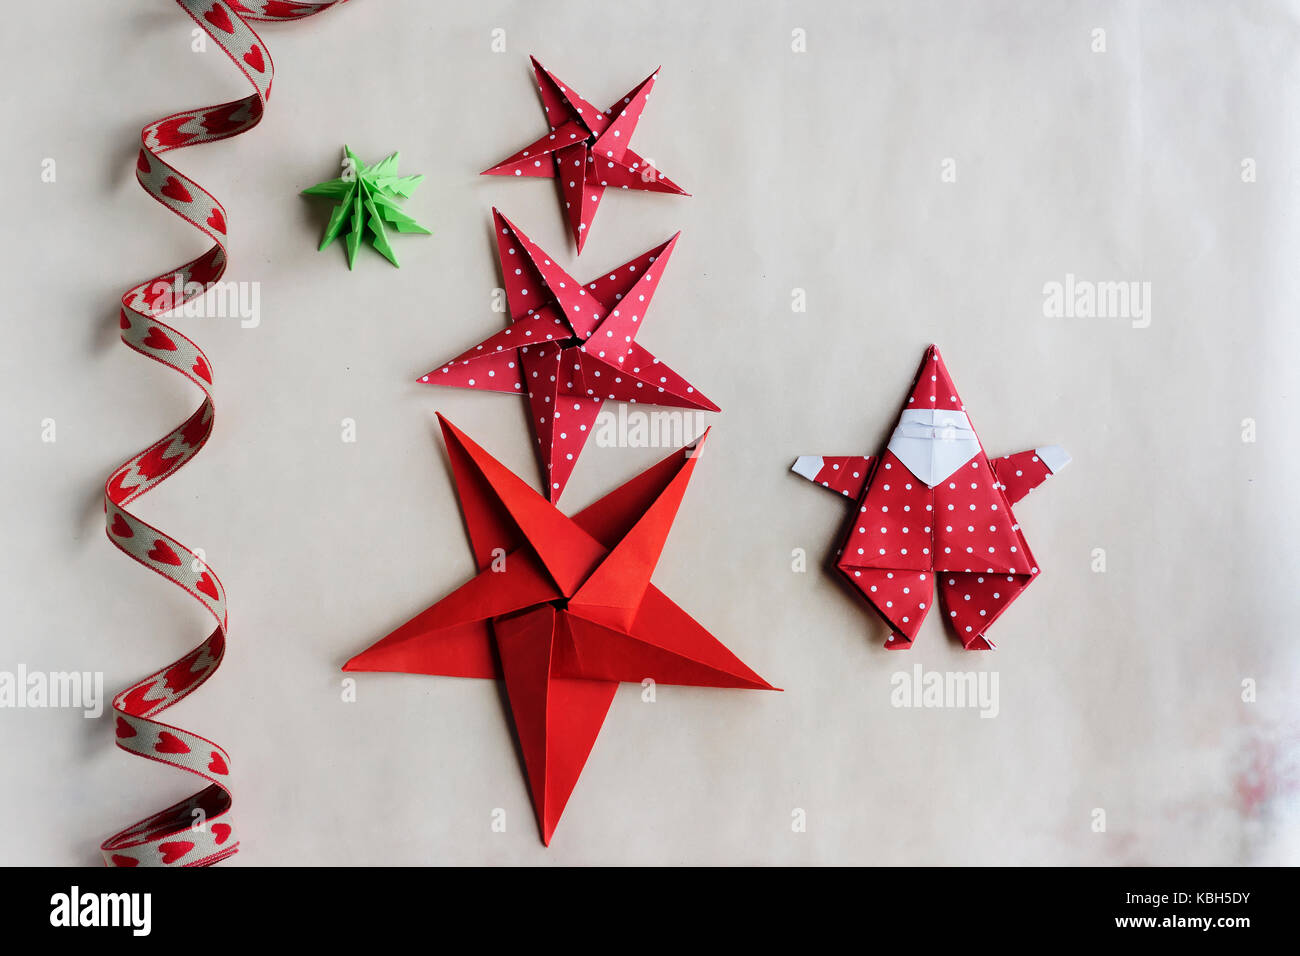 Overhead von Handgefertigten origami Weihnachtsschmuck und Farbband auf das  Papier Hintergrund. Gegenstand erfassen gegen Soft windows Beleuchtung  Stockfotografie - Alamy